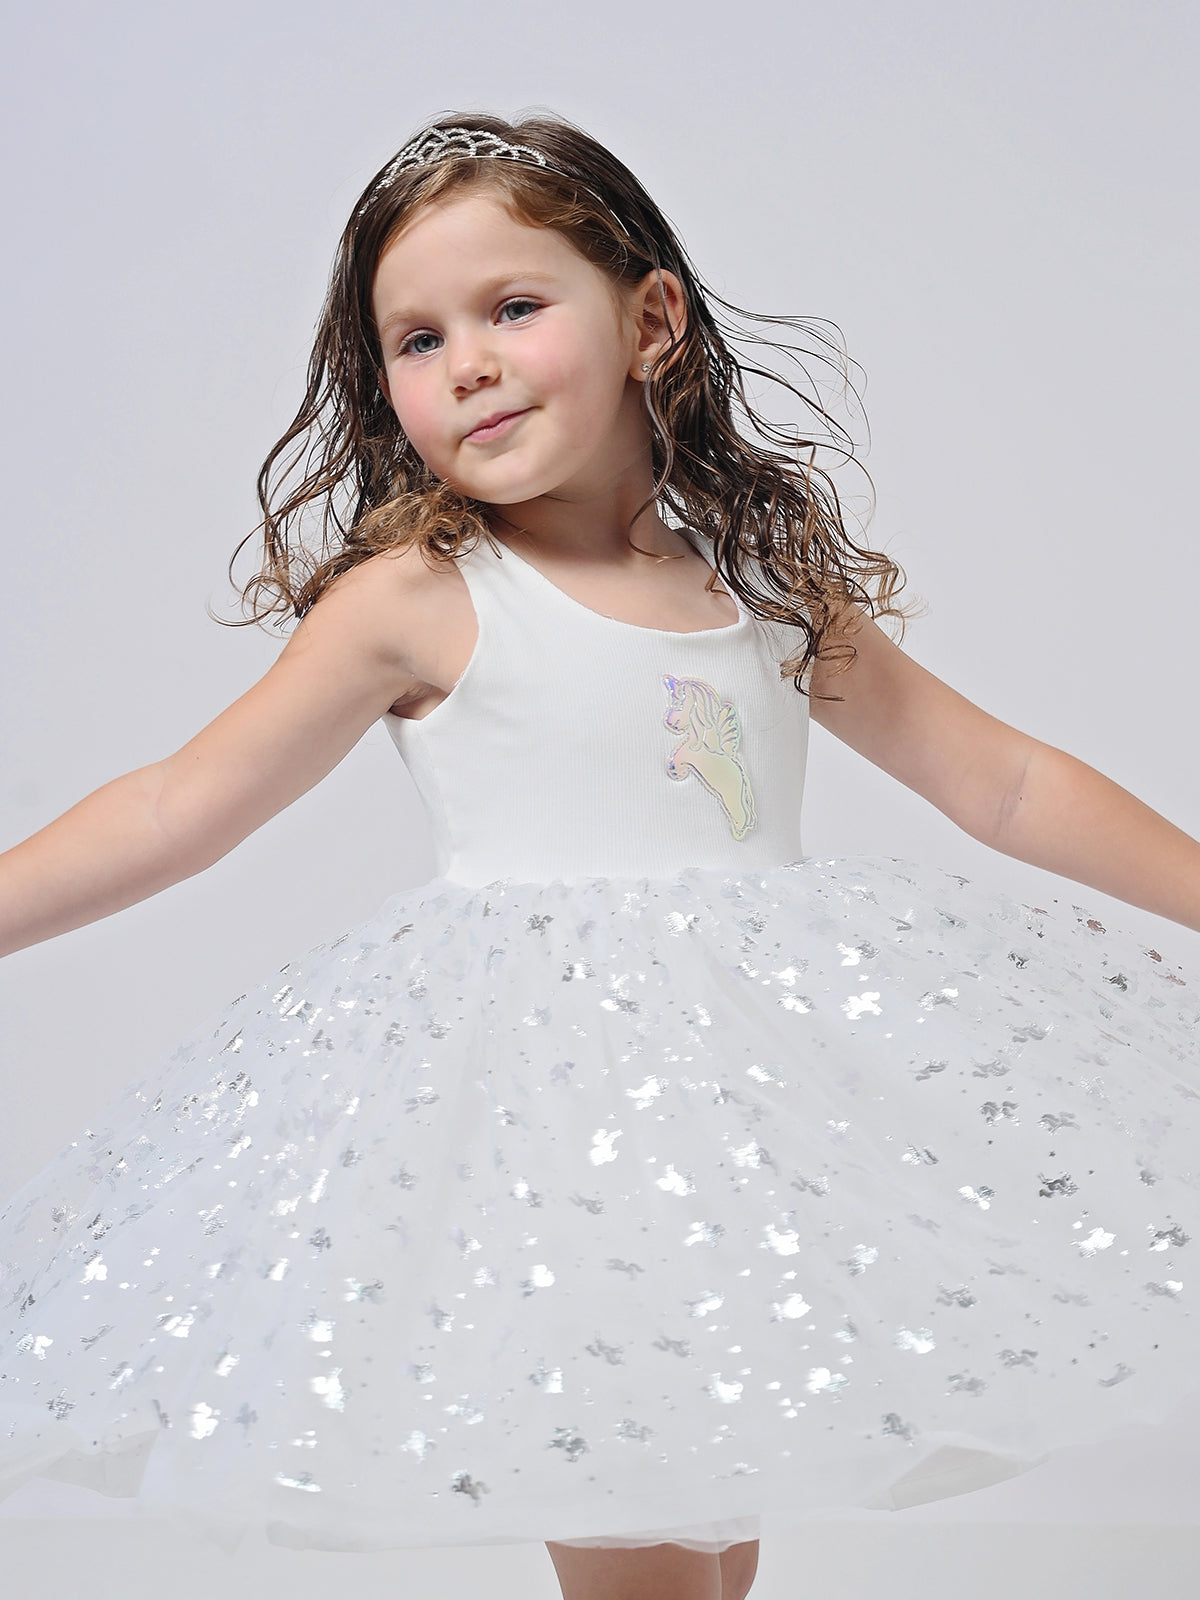 שמלת טול חדי קרן מבריקים לבנה / ילדות ותינוקות- Almonet|עלמונת